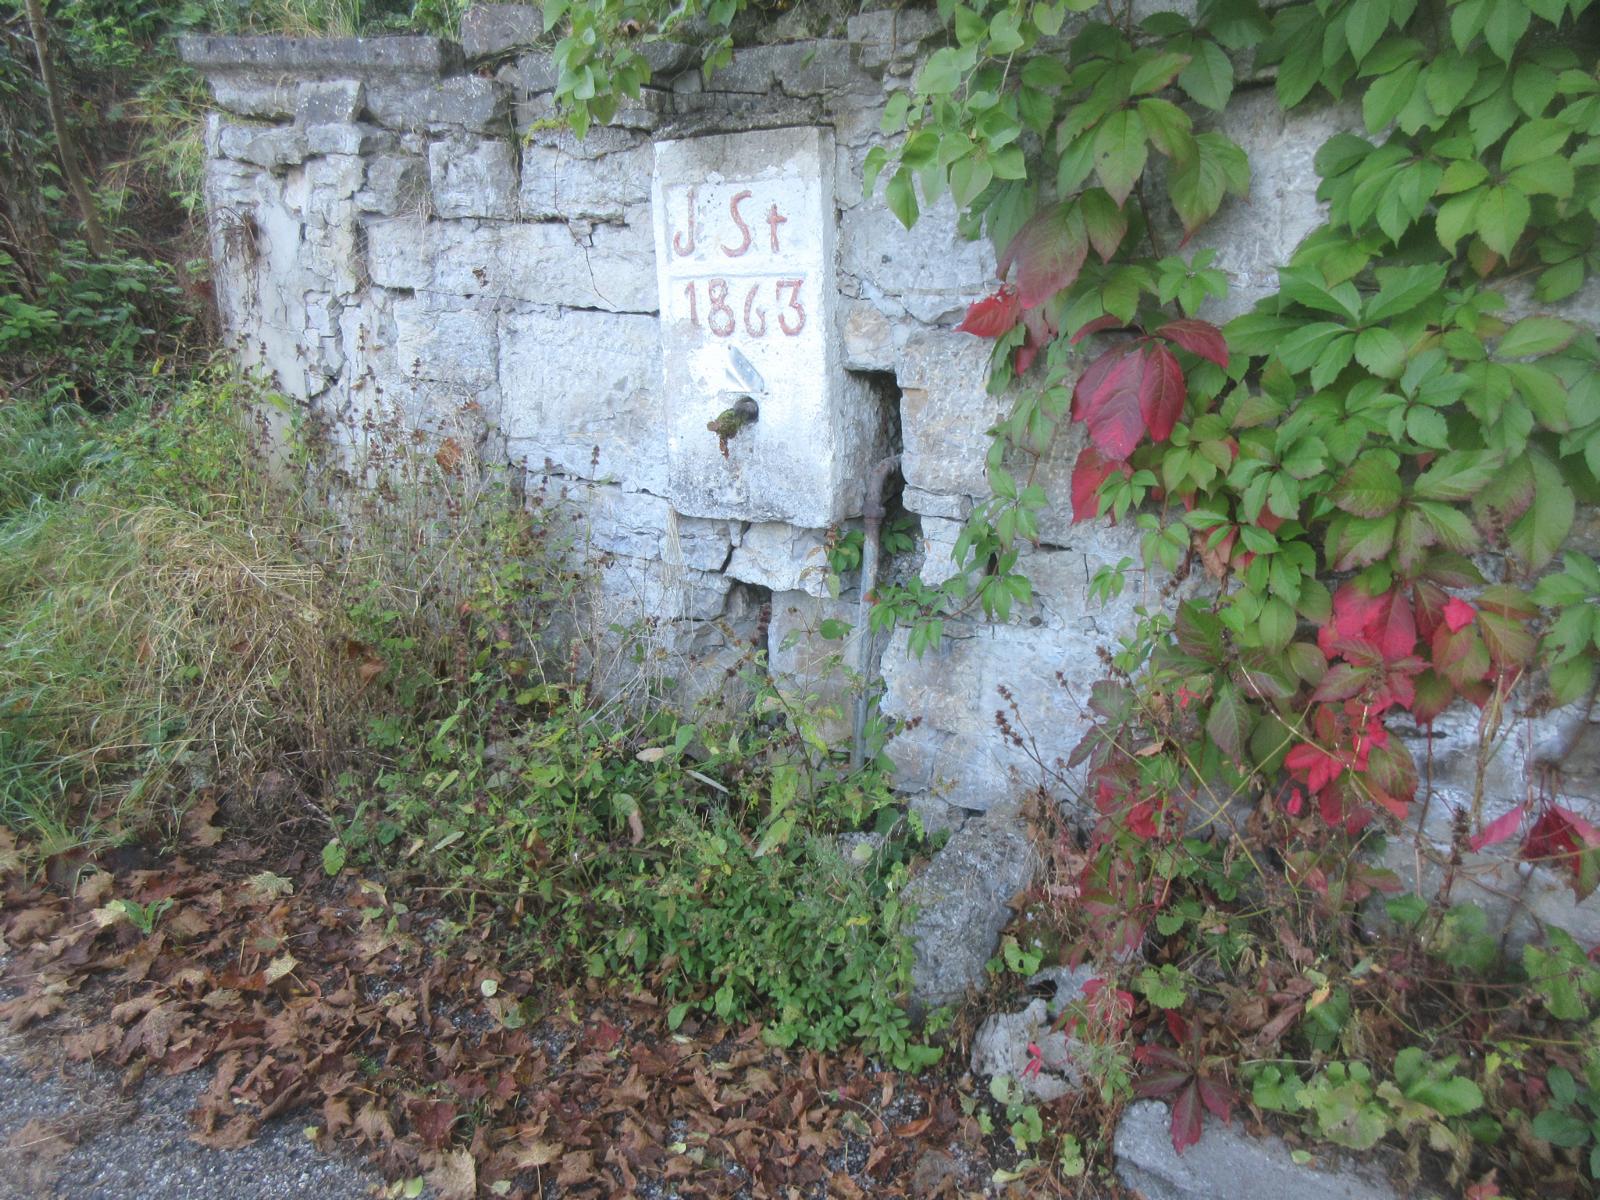 Alte Schulstrasse *** 1863 *** -- *** -- *** Überreste eines alten Brunnens; Inschrift "J.St. 1863"